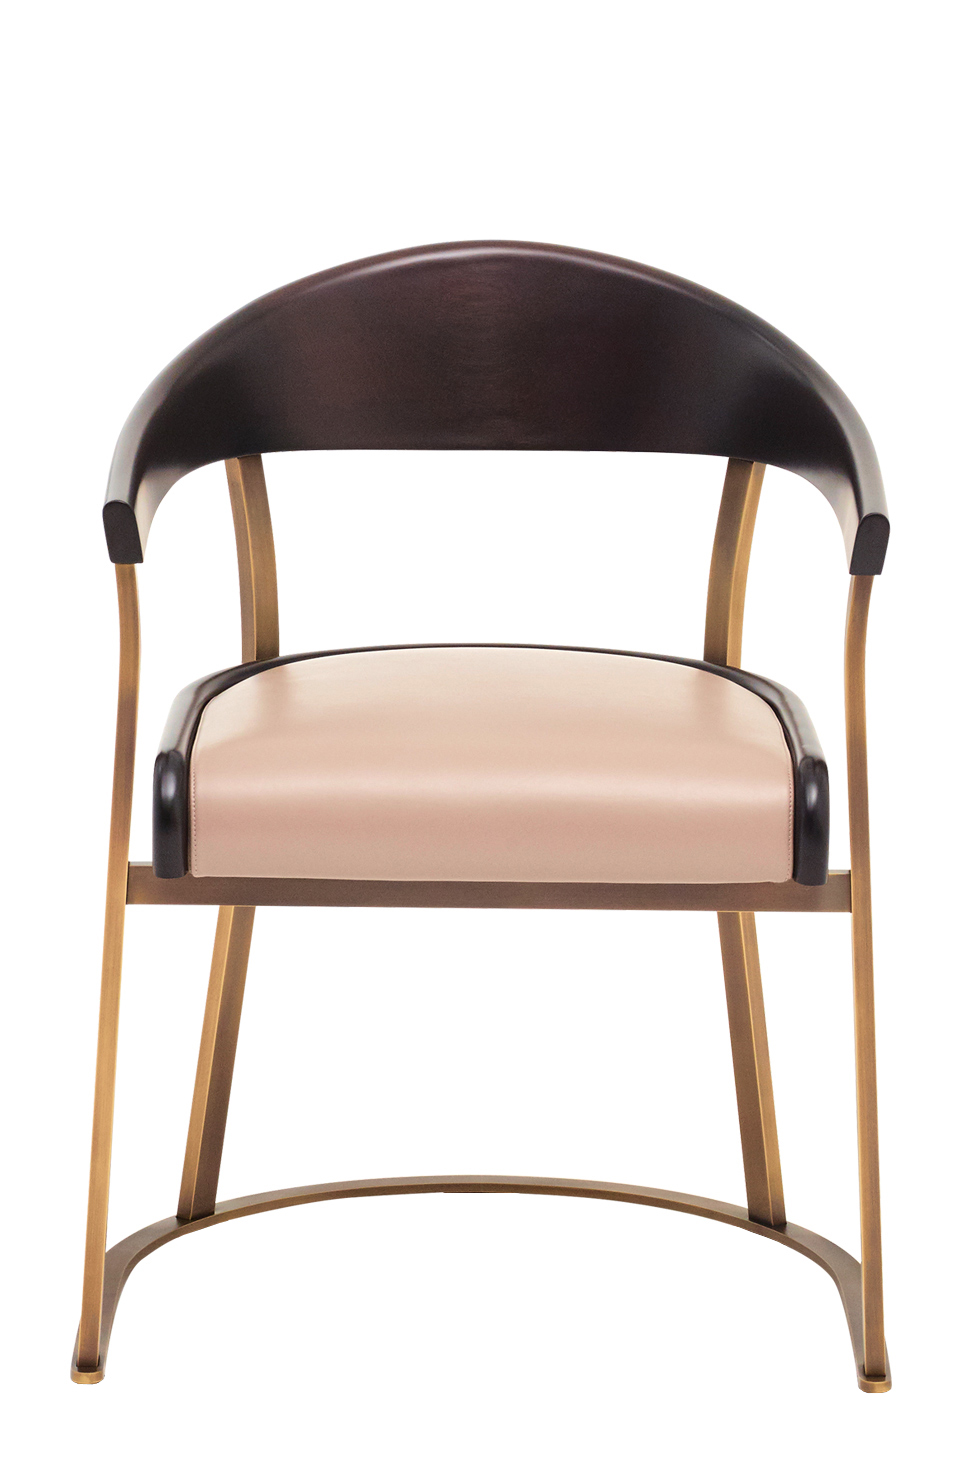 „Rachele“ ist ein Armlehnstuhl aus Bronze mit Rückenlehne aus Holz oder Leder und Ledersitzfläche, aus dem Katalog von Promemoria | Promemoria